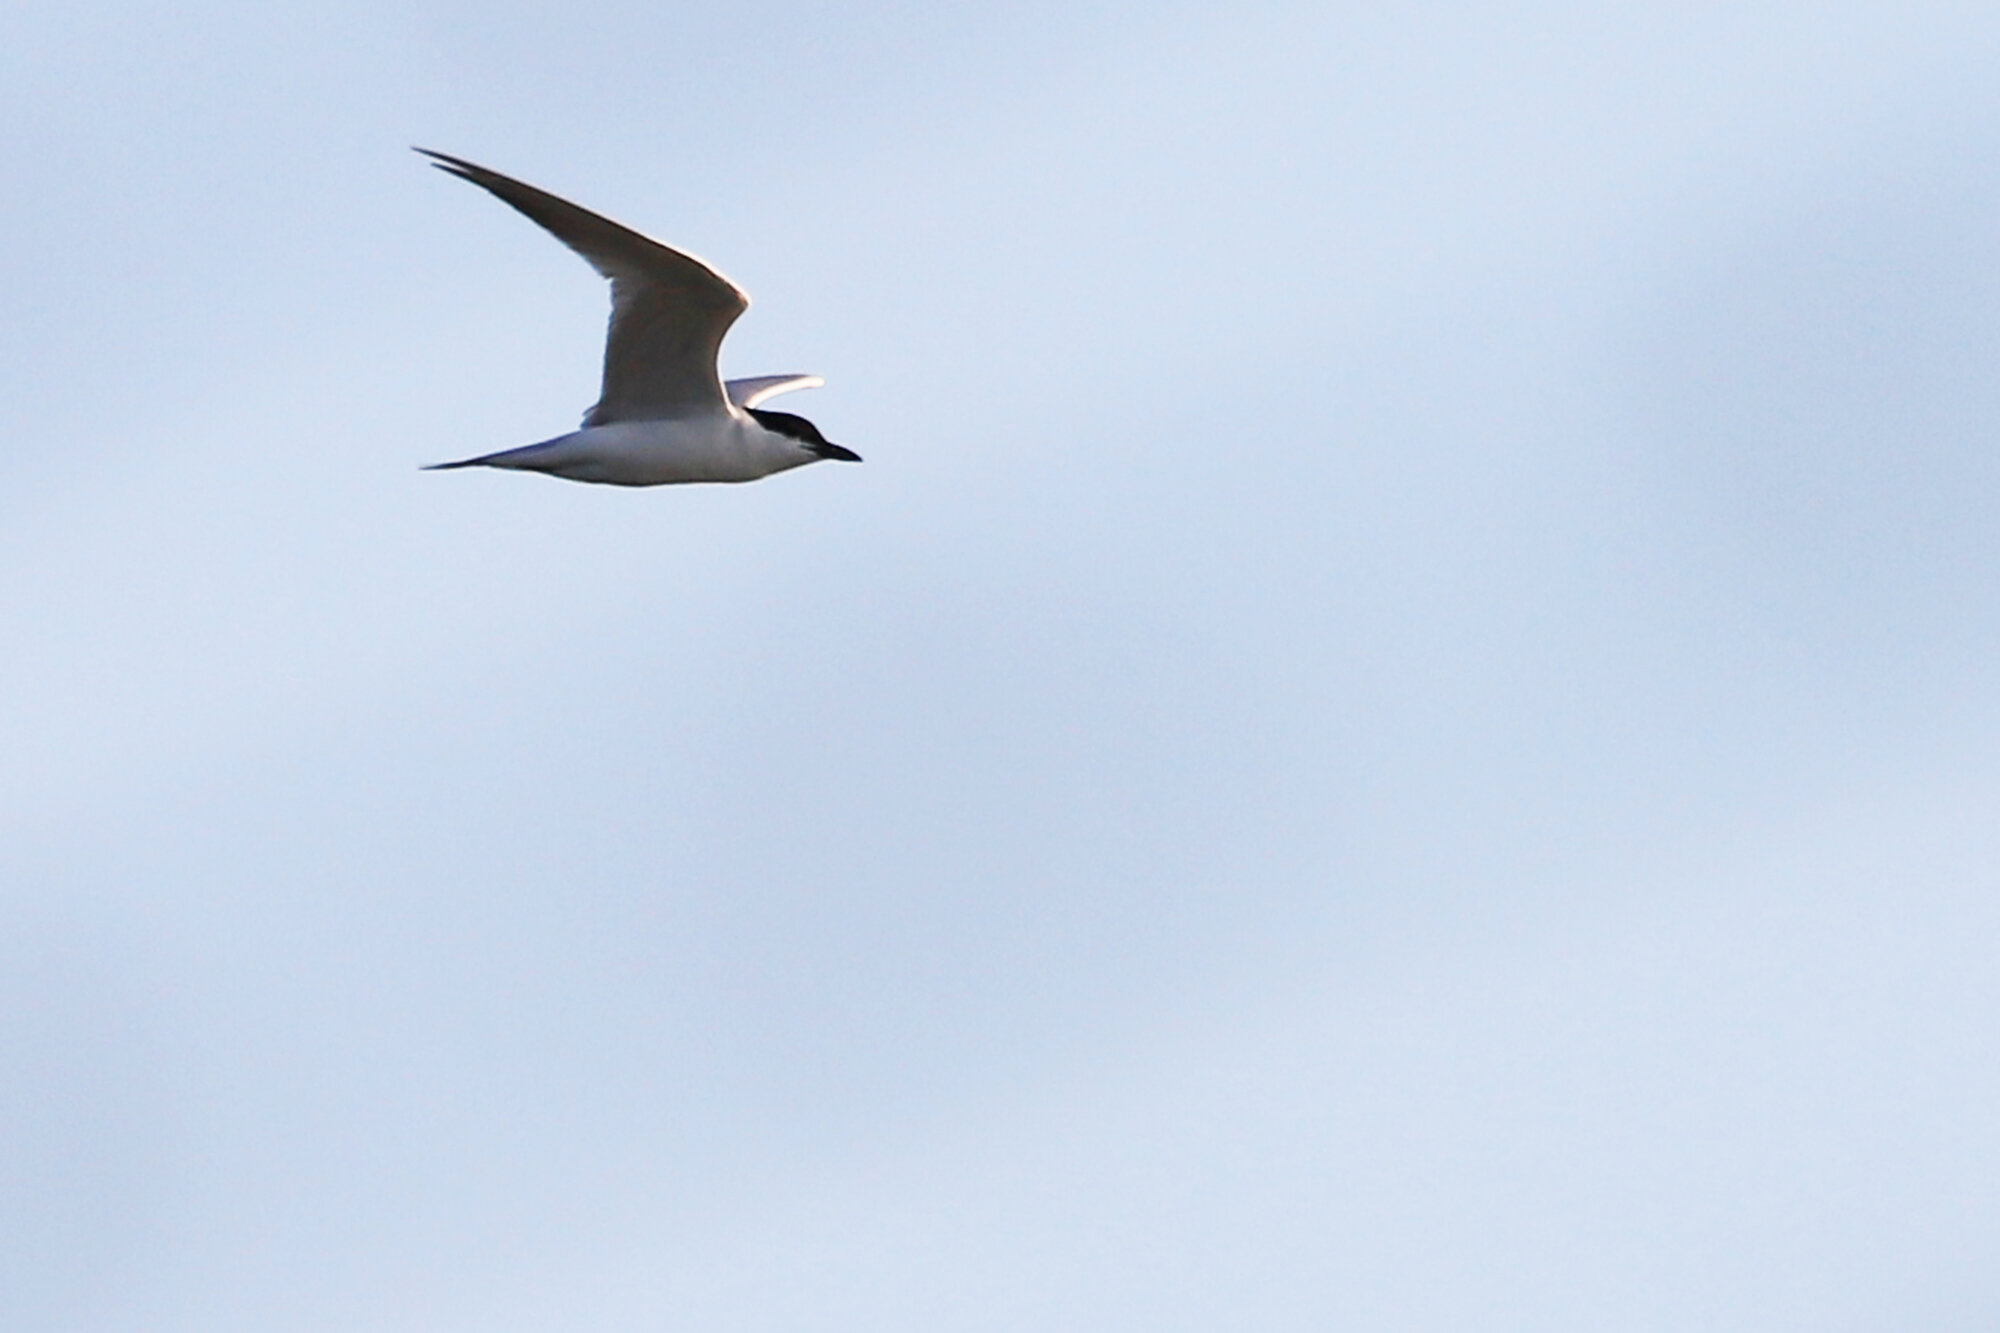  Gull-billed Tern / First Landing SP / 18 Jul 